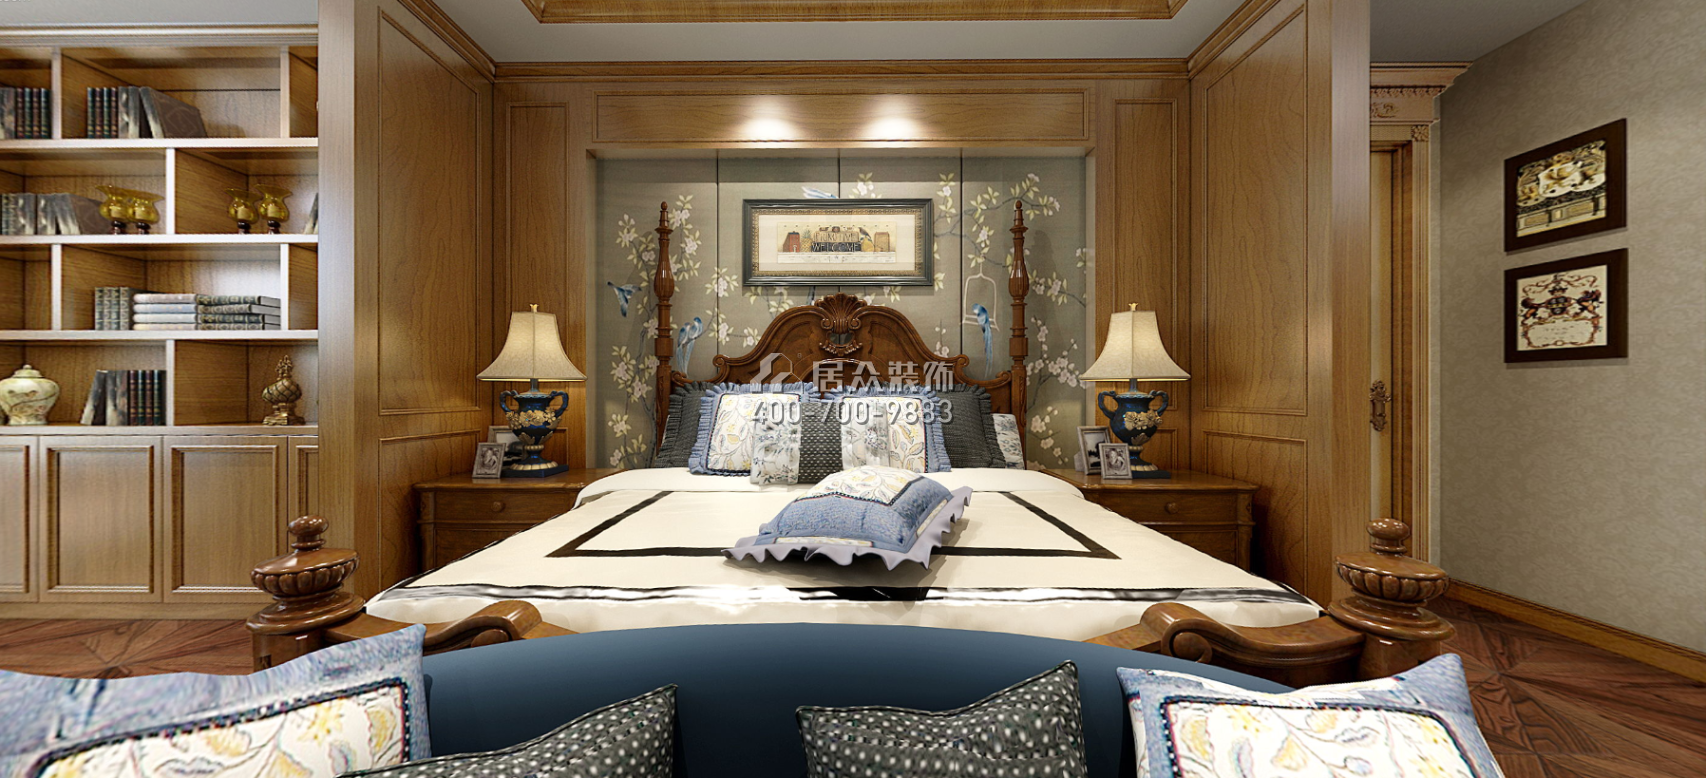 托斯卡纳320平方米美式风格别墅户型卧室装修效果图